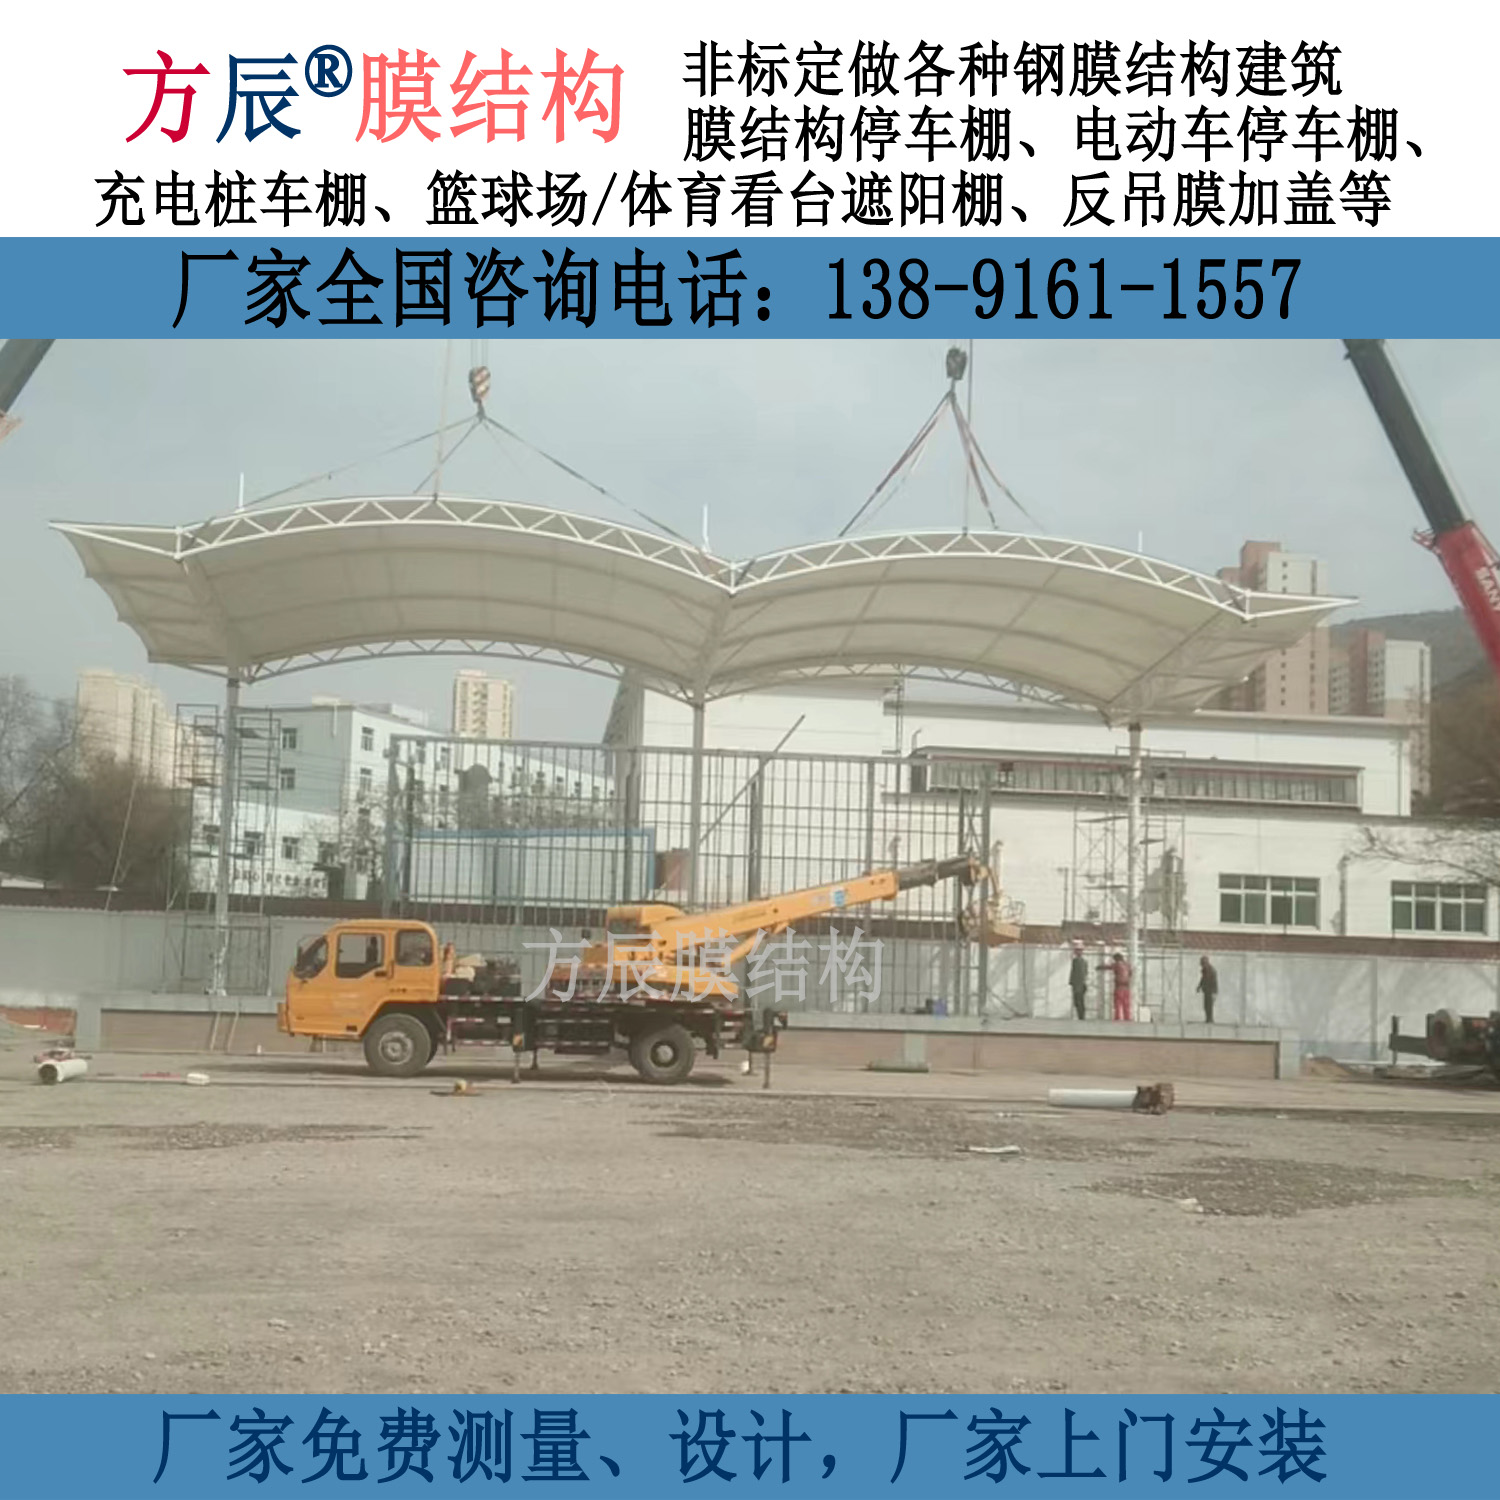 甘肃省兰州市城关区五十二中学膜结构看台